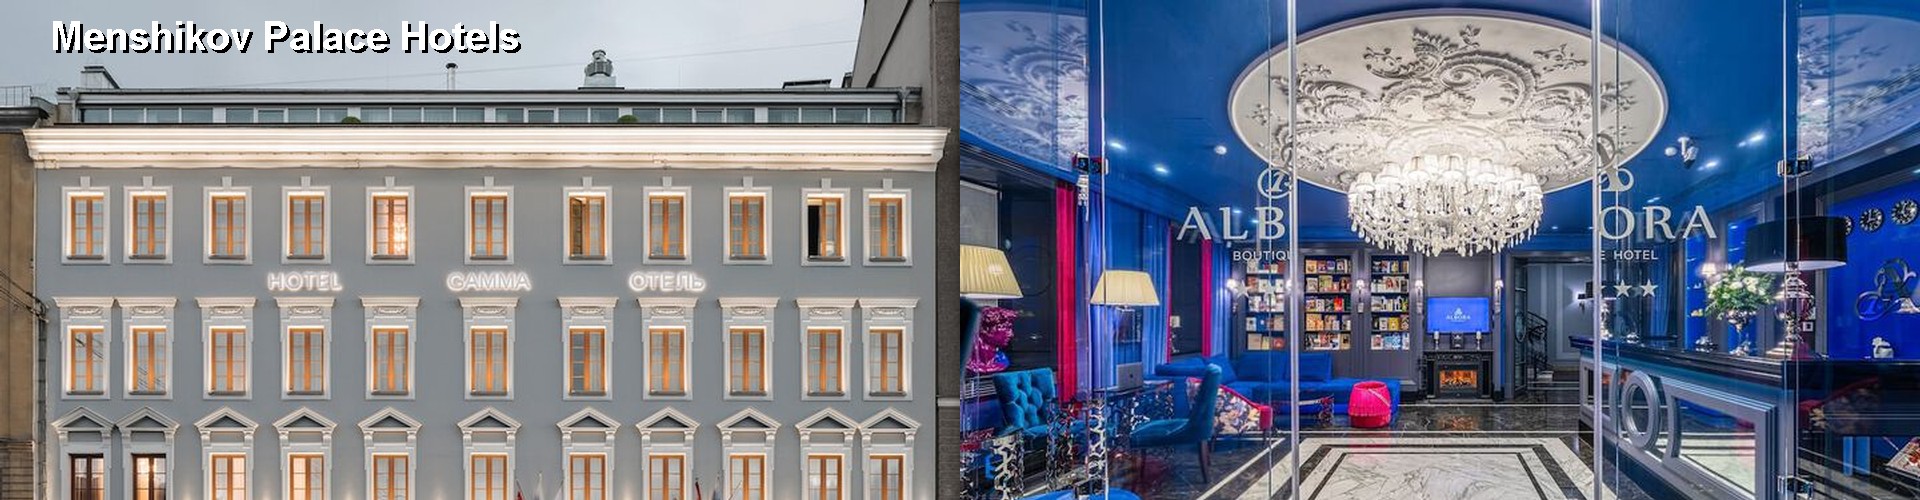 5 Best Hotels near Menshikov Palace